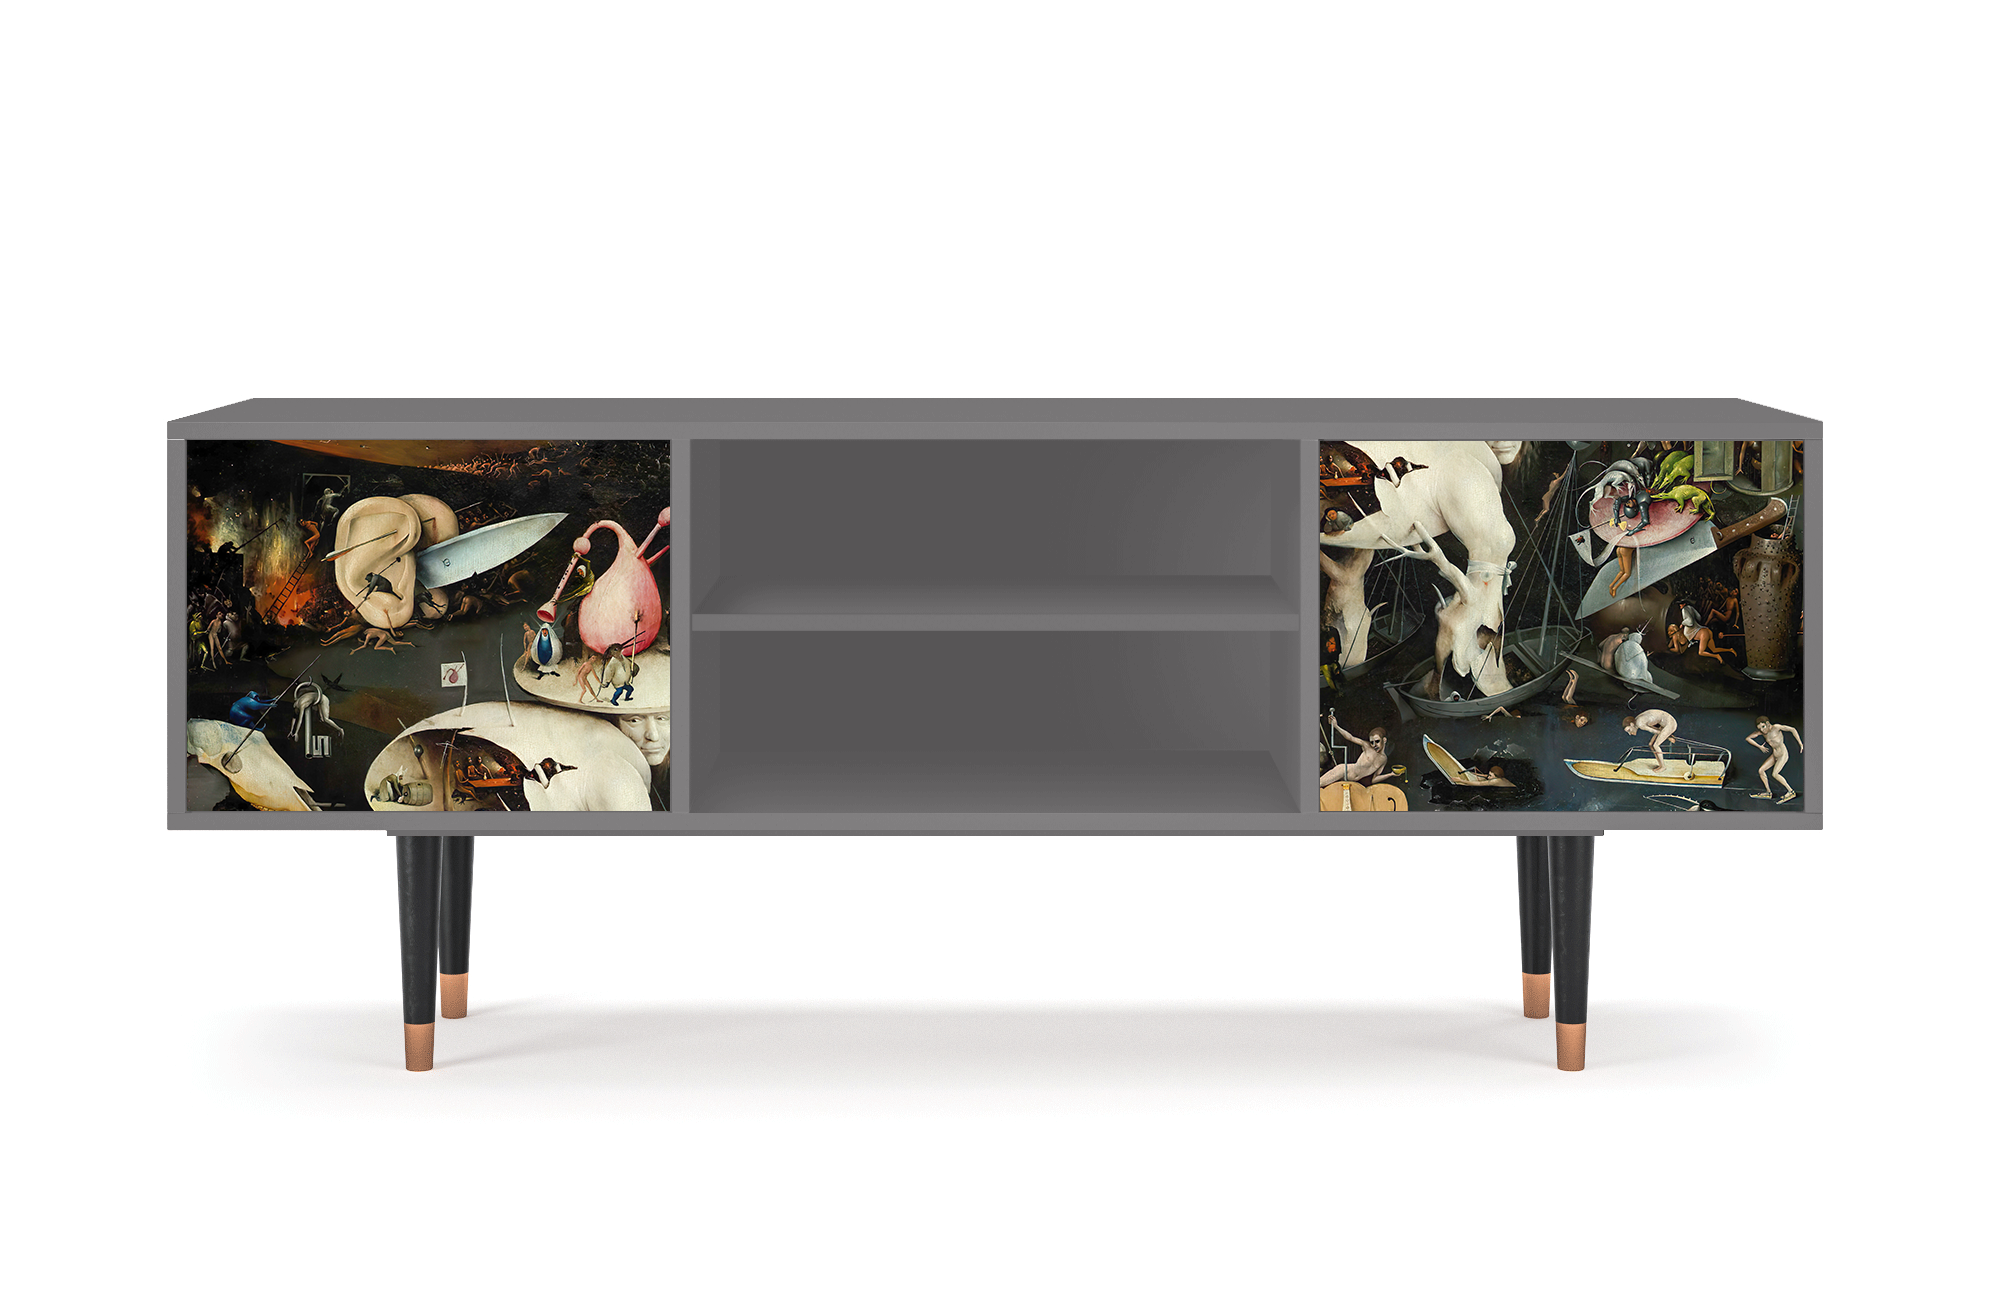 ТВ-Тумба - STORYZ - T2 The Garden of Earthly Delights by Hieronymus Bosch, 170 x 69 x 48 см, Серый - фотография № 2